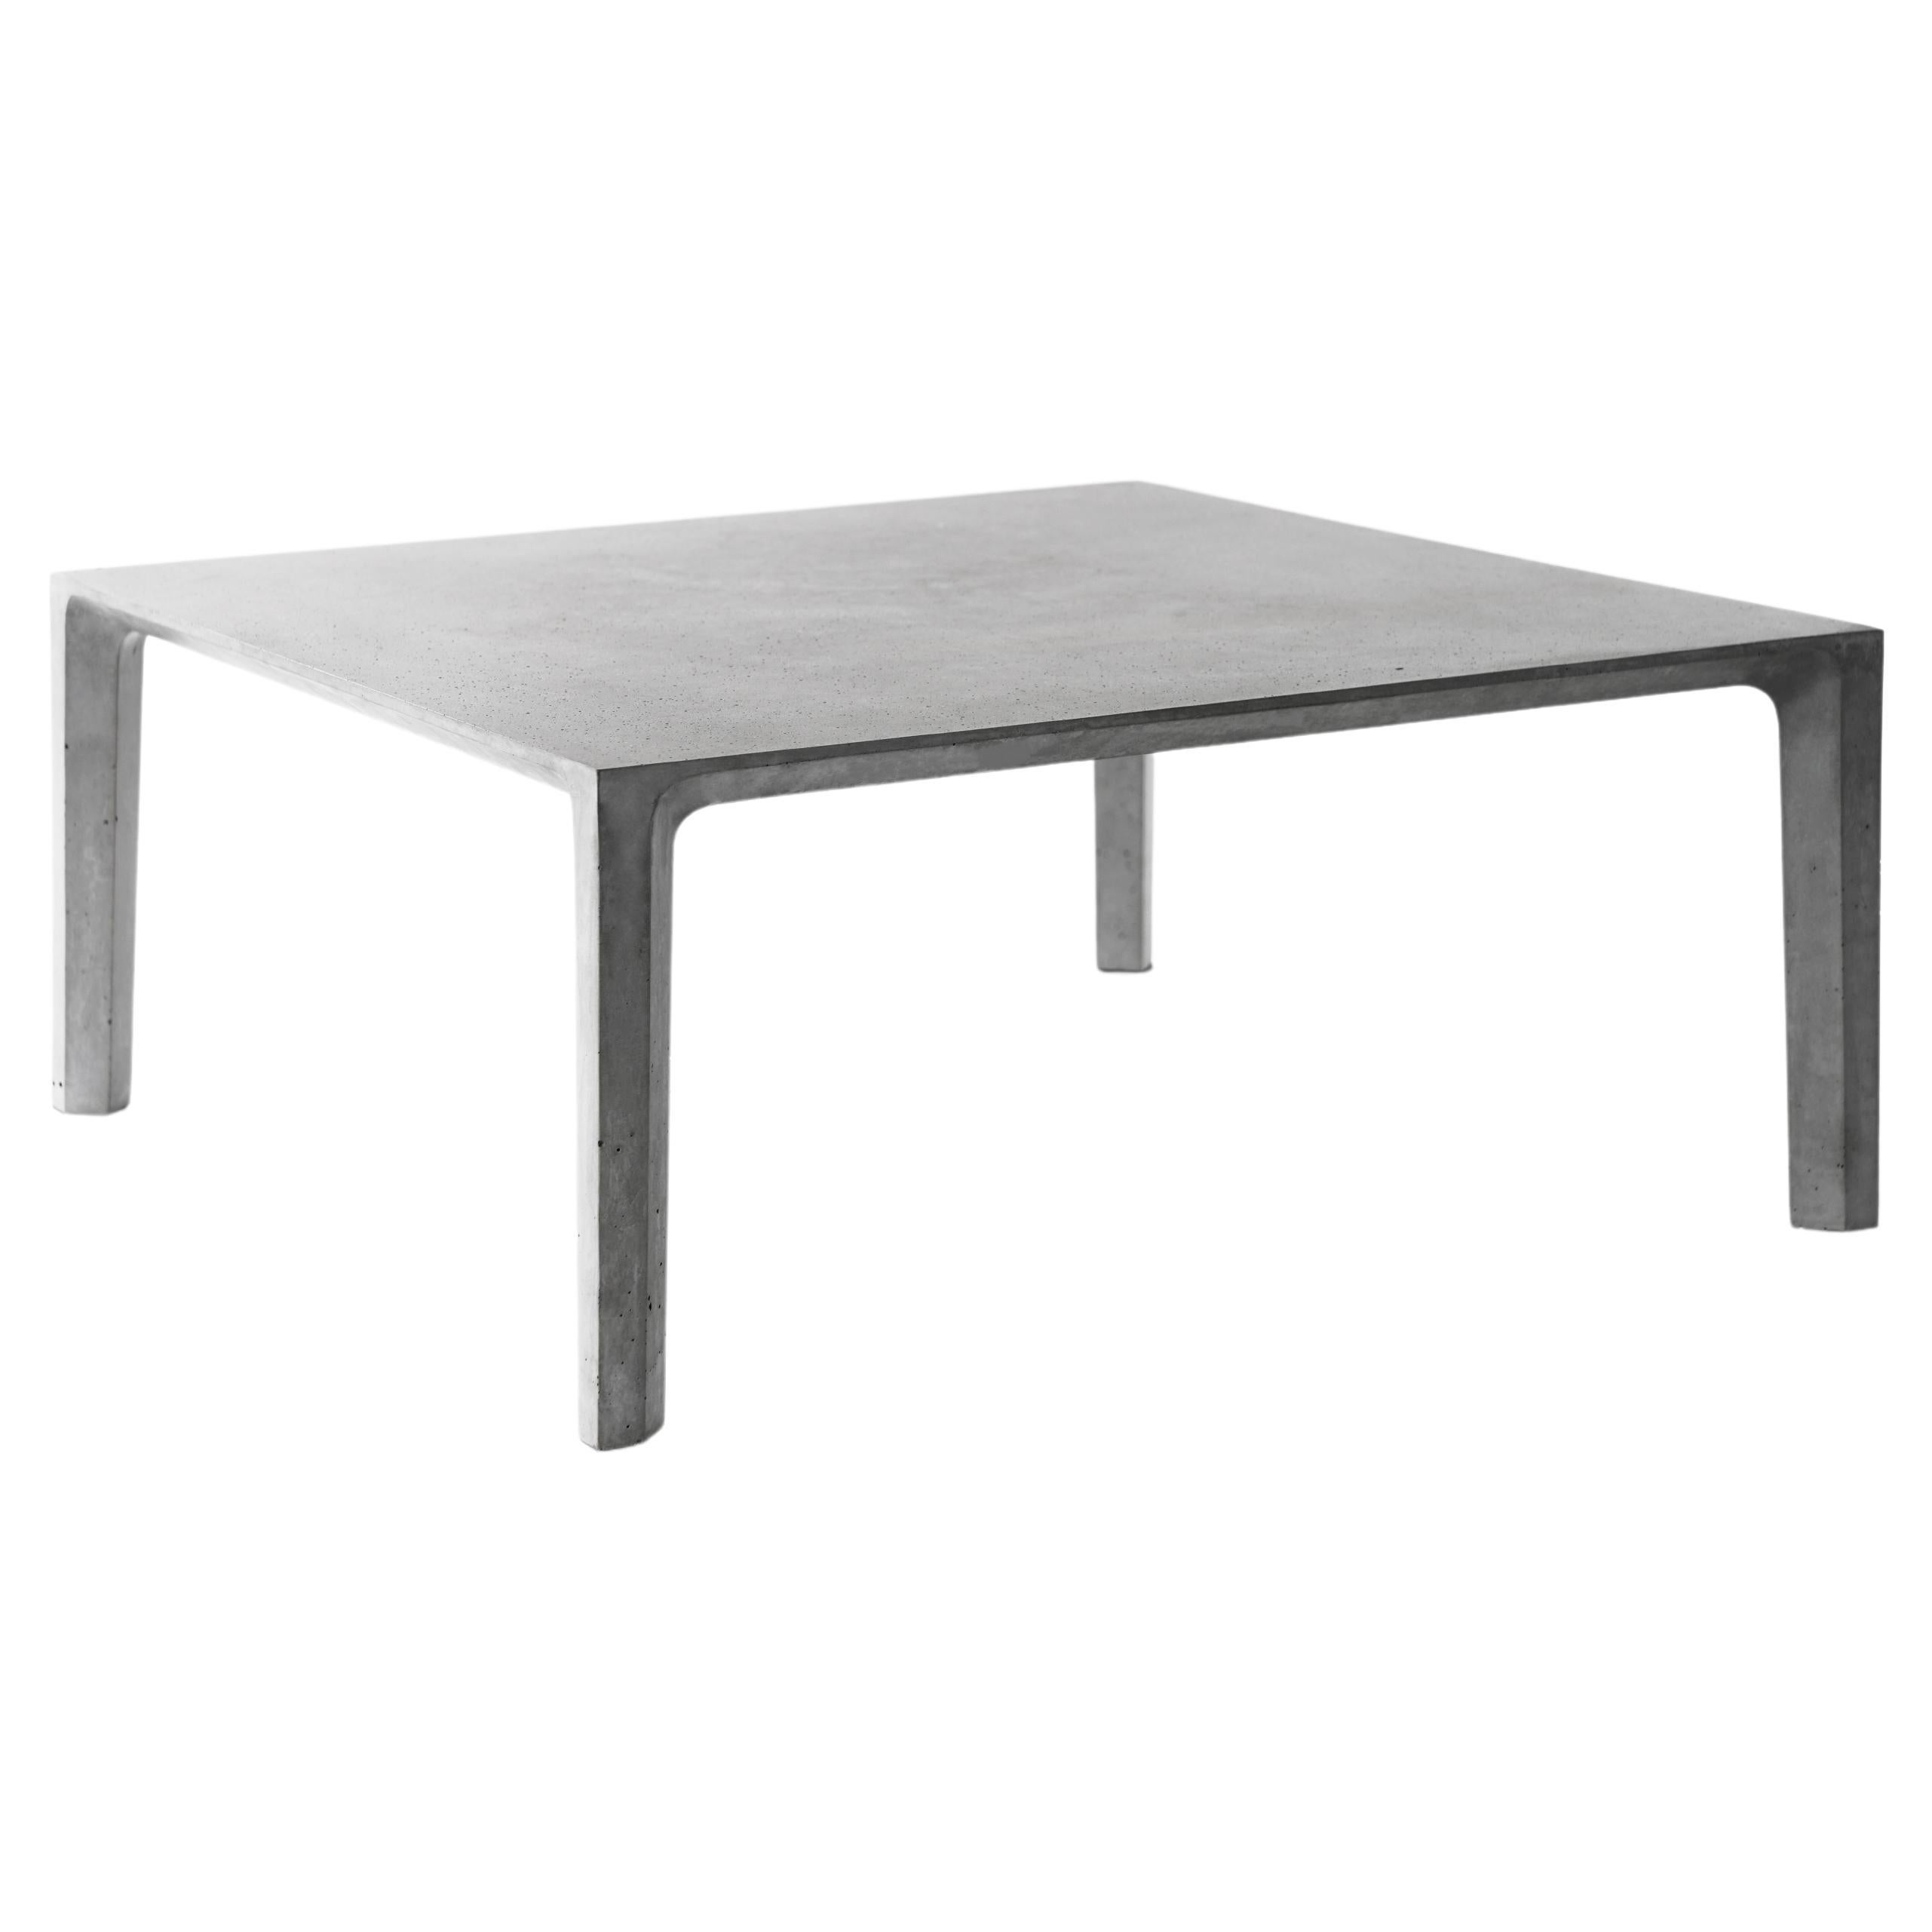 Table d'appoint/table basse contemporaine Jiong en béton, par Bentu Design